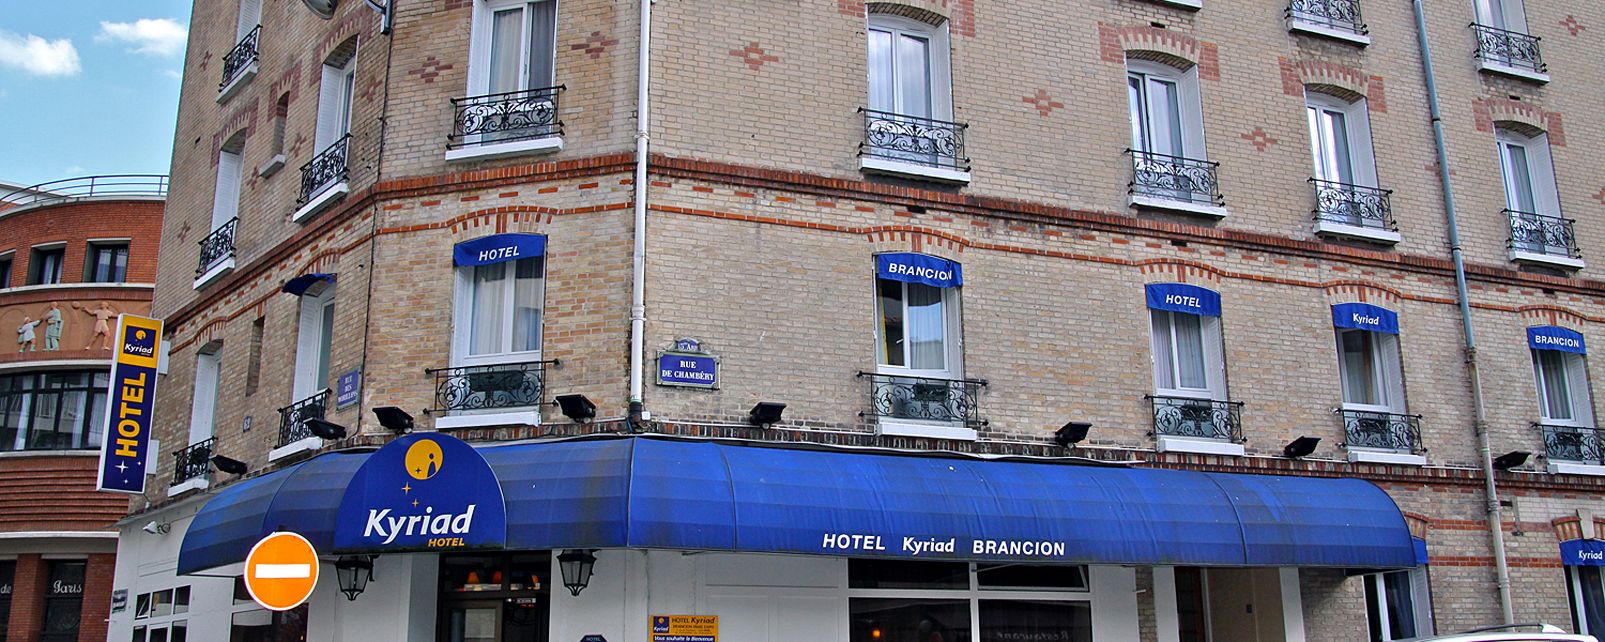 Hotel Kyriad Brancion